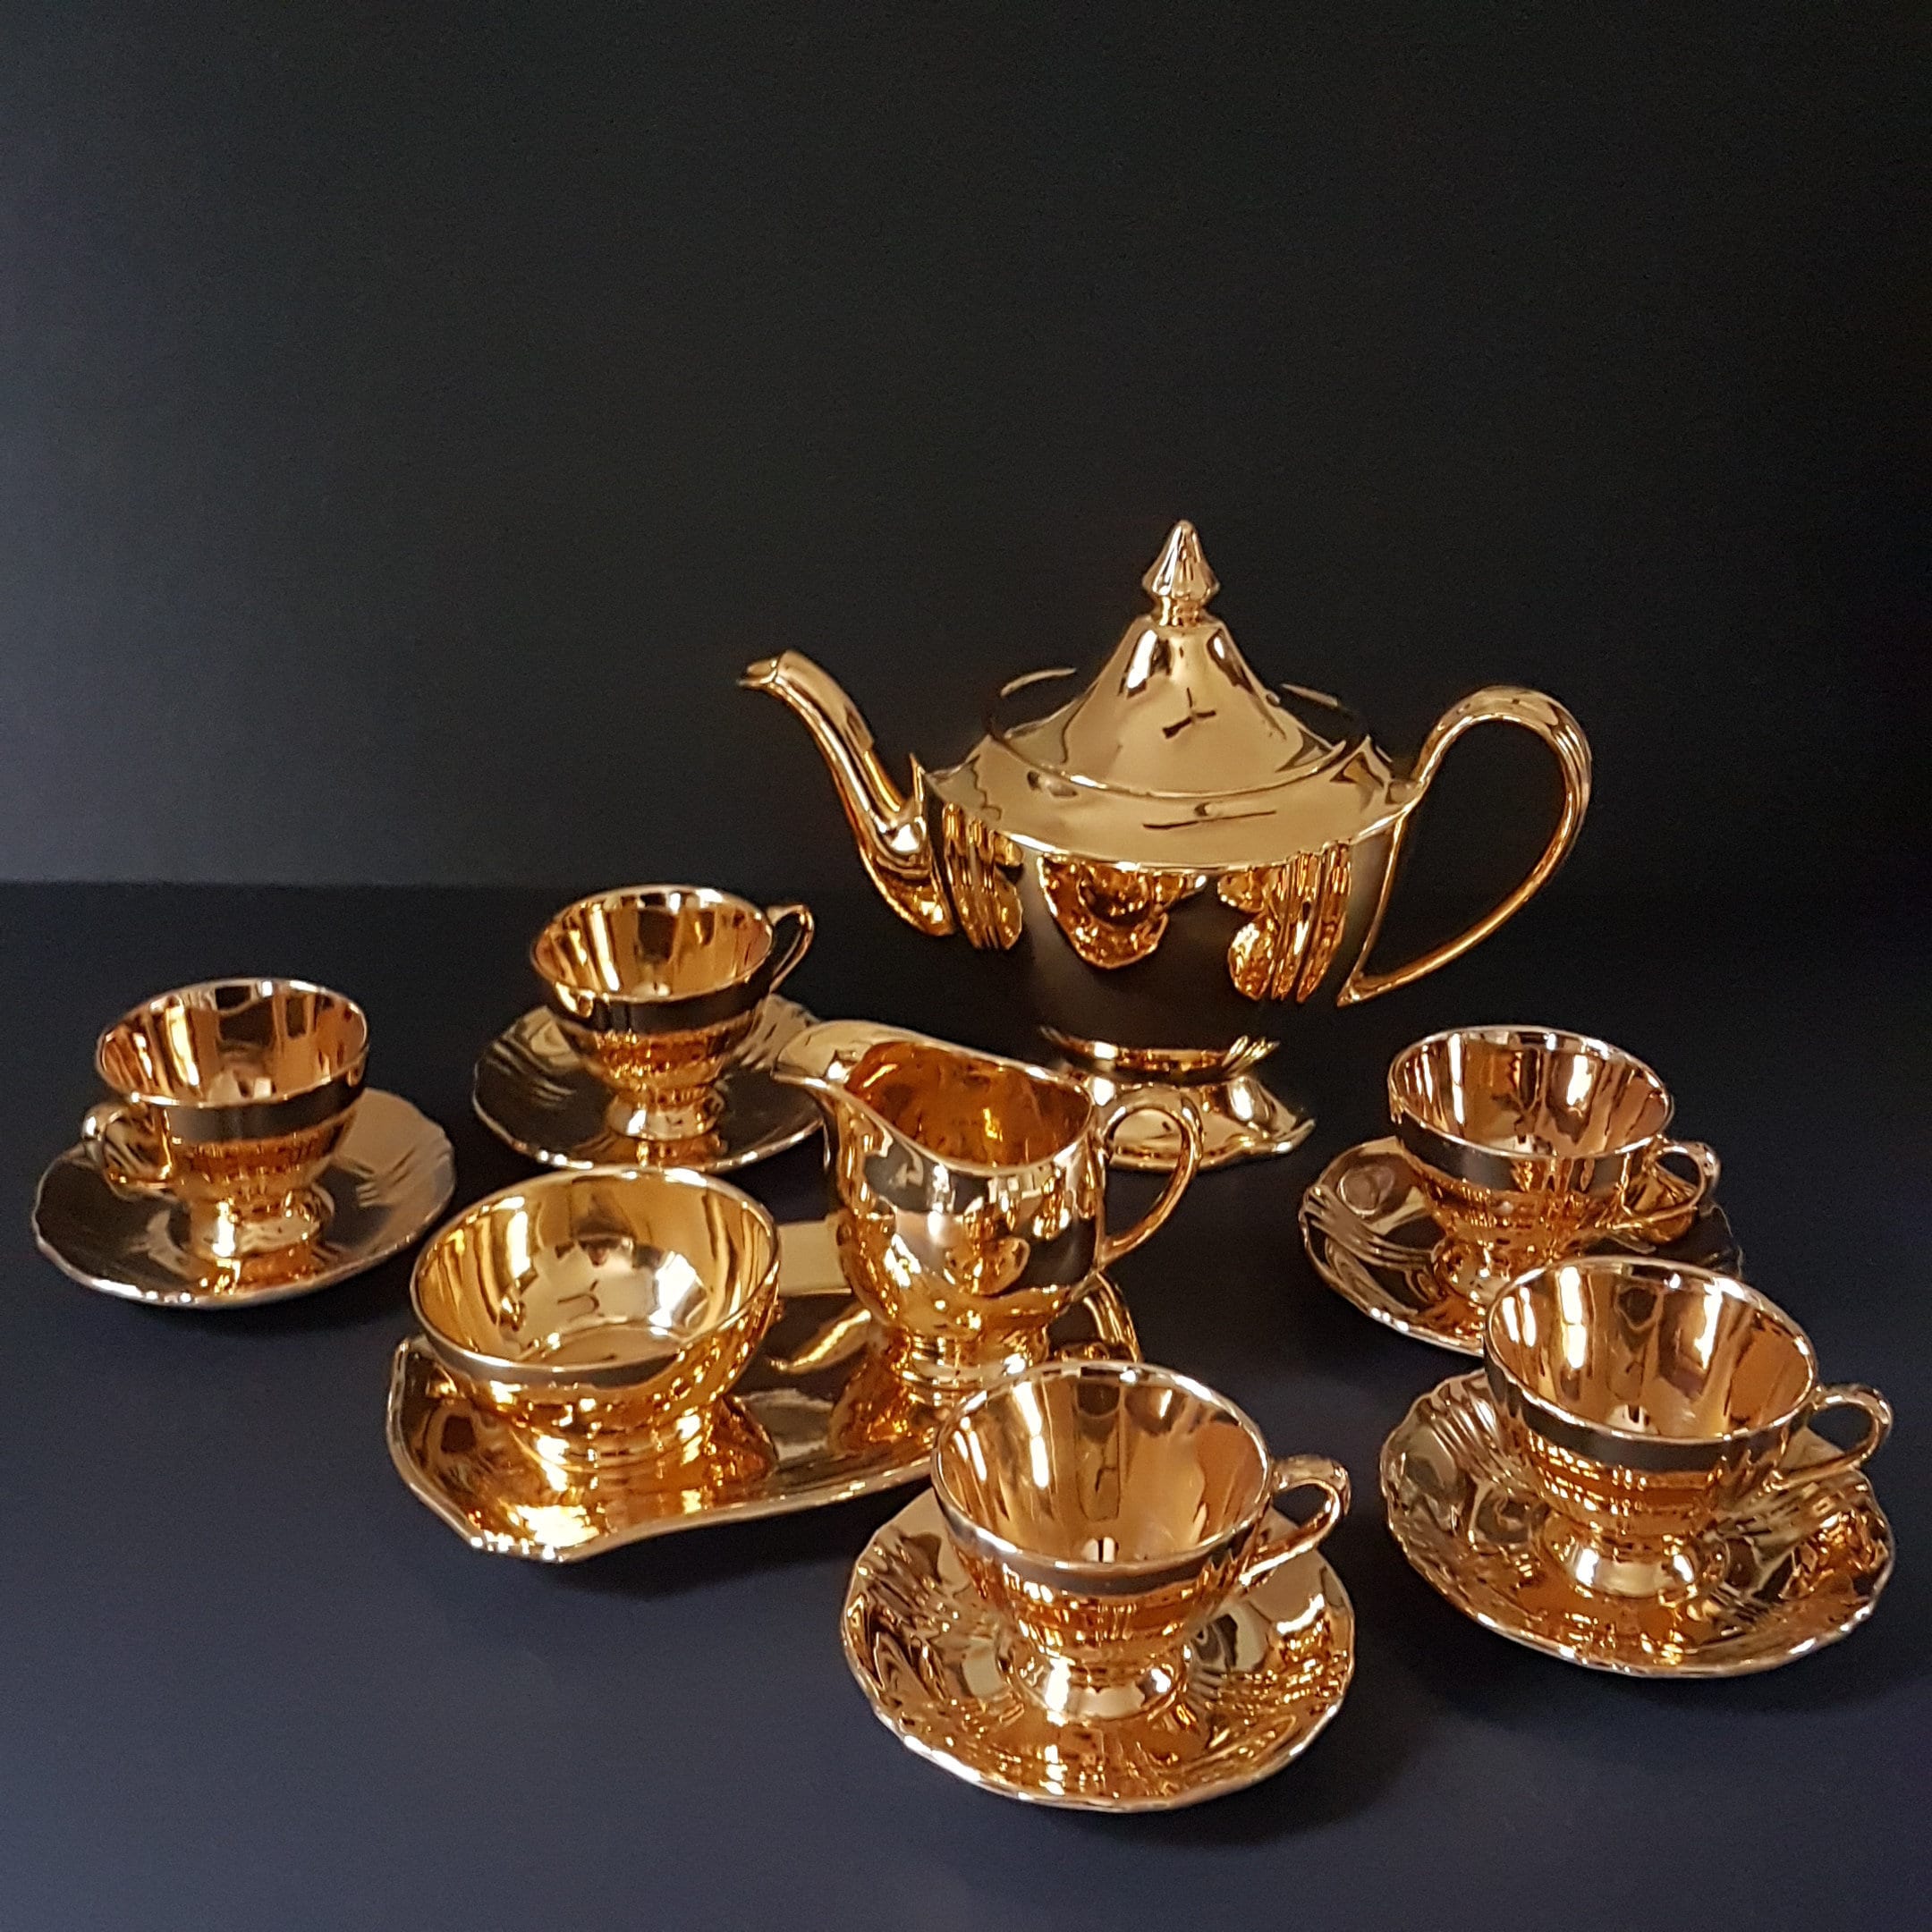 Royal Winton GOLDEN AGE Tea Set for 4 or 5, Teapot, Cream, Sugar